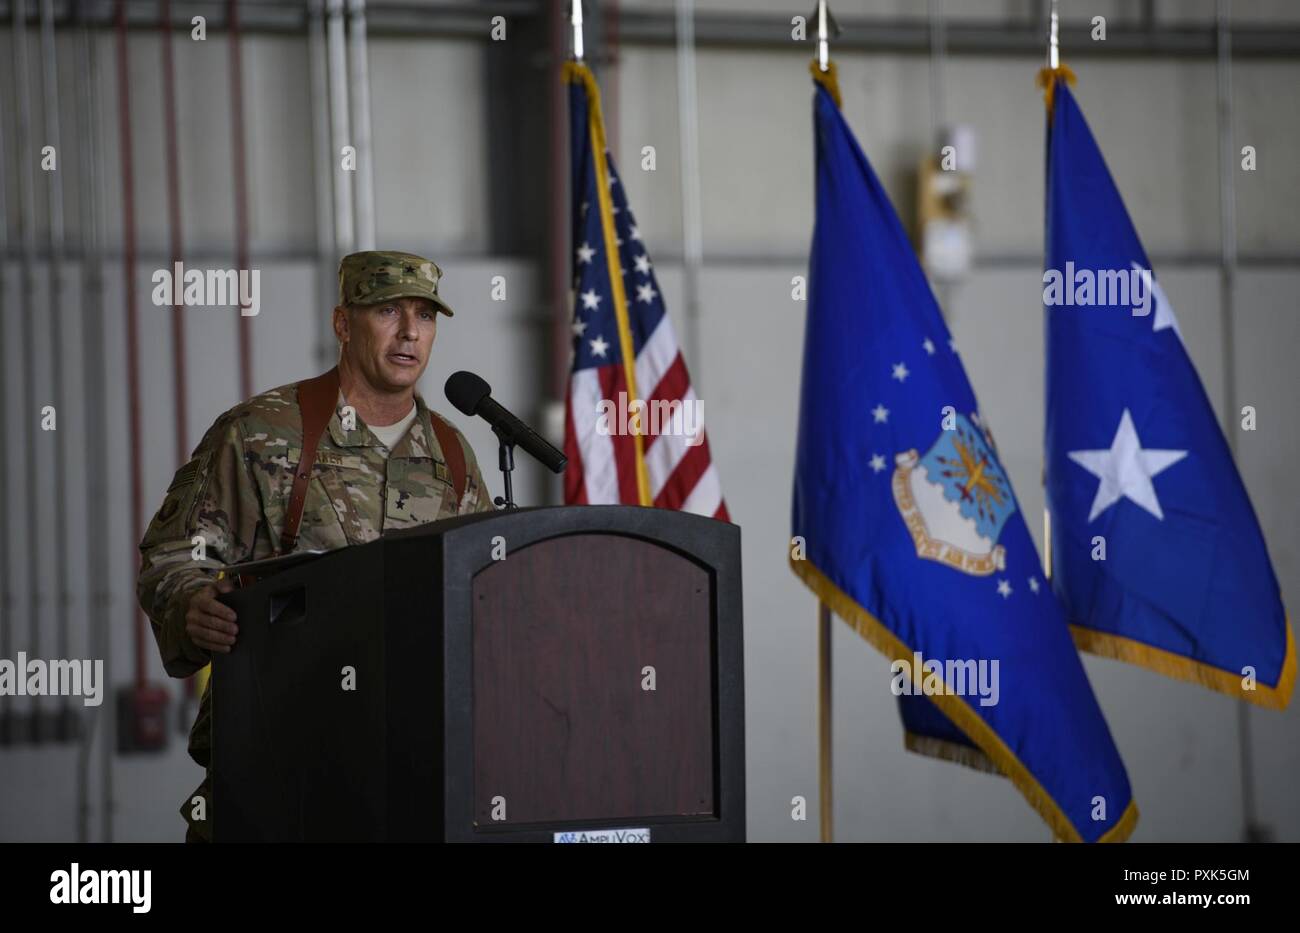 Brig. Gen. Craig Baker, el comandante de ala expedicionaria aérea 455A, habla con 455AEW de aviadores y distinguidos invitados durante una ceremonia de cambio de mando en el aeródromo de Bagram, Afganistán, 3 de junio de 2017. Como el comandante de la 455AEW, Baker dirigirá la premier de aire de contraterrorismo de la misión en Afganistán. Las operaciones del ala que el decidido apoyo de la OTAN a la misión con éxito, asesorar, capacitar y prestar asistencia a las fuerzas militares y de seguridad de Afganistán, y restringir y disuadir la amenaza terrorista en la región. Foto de stock